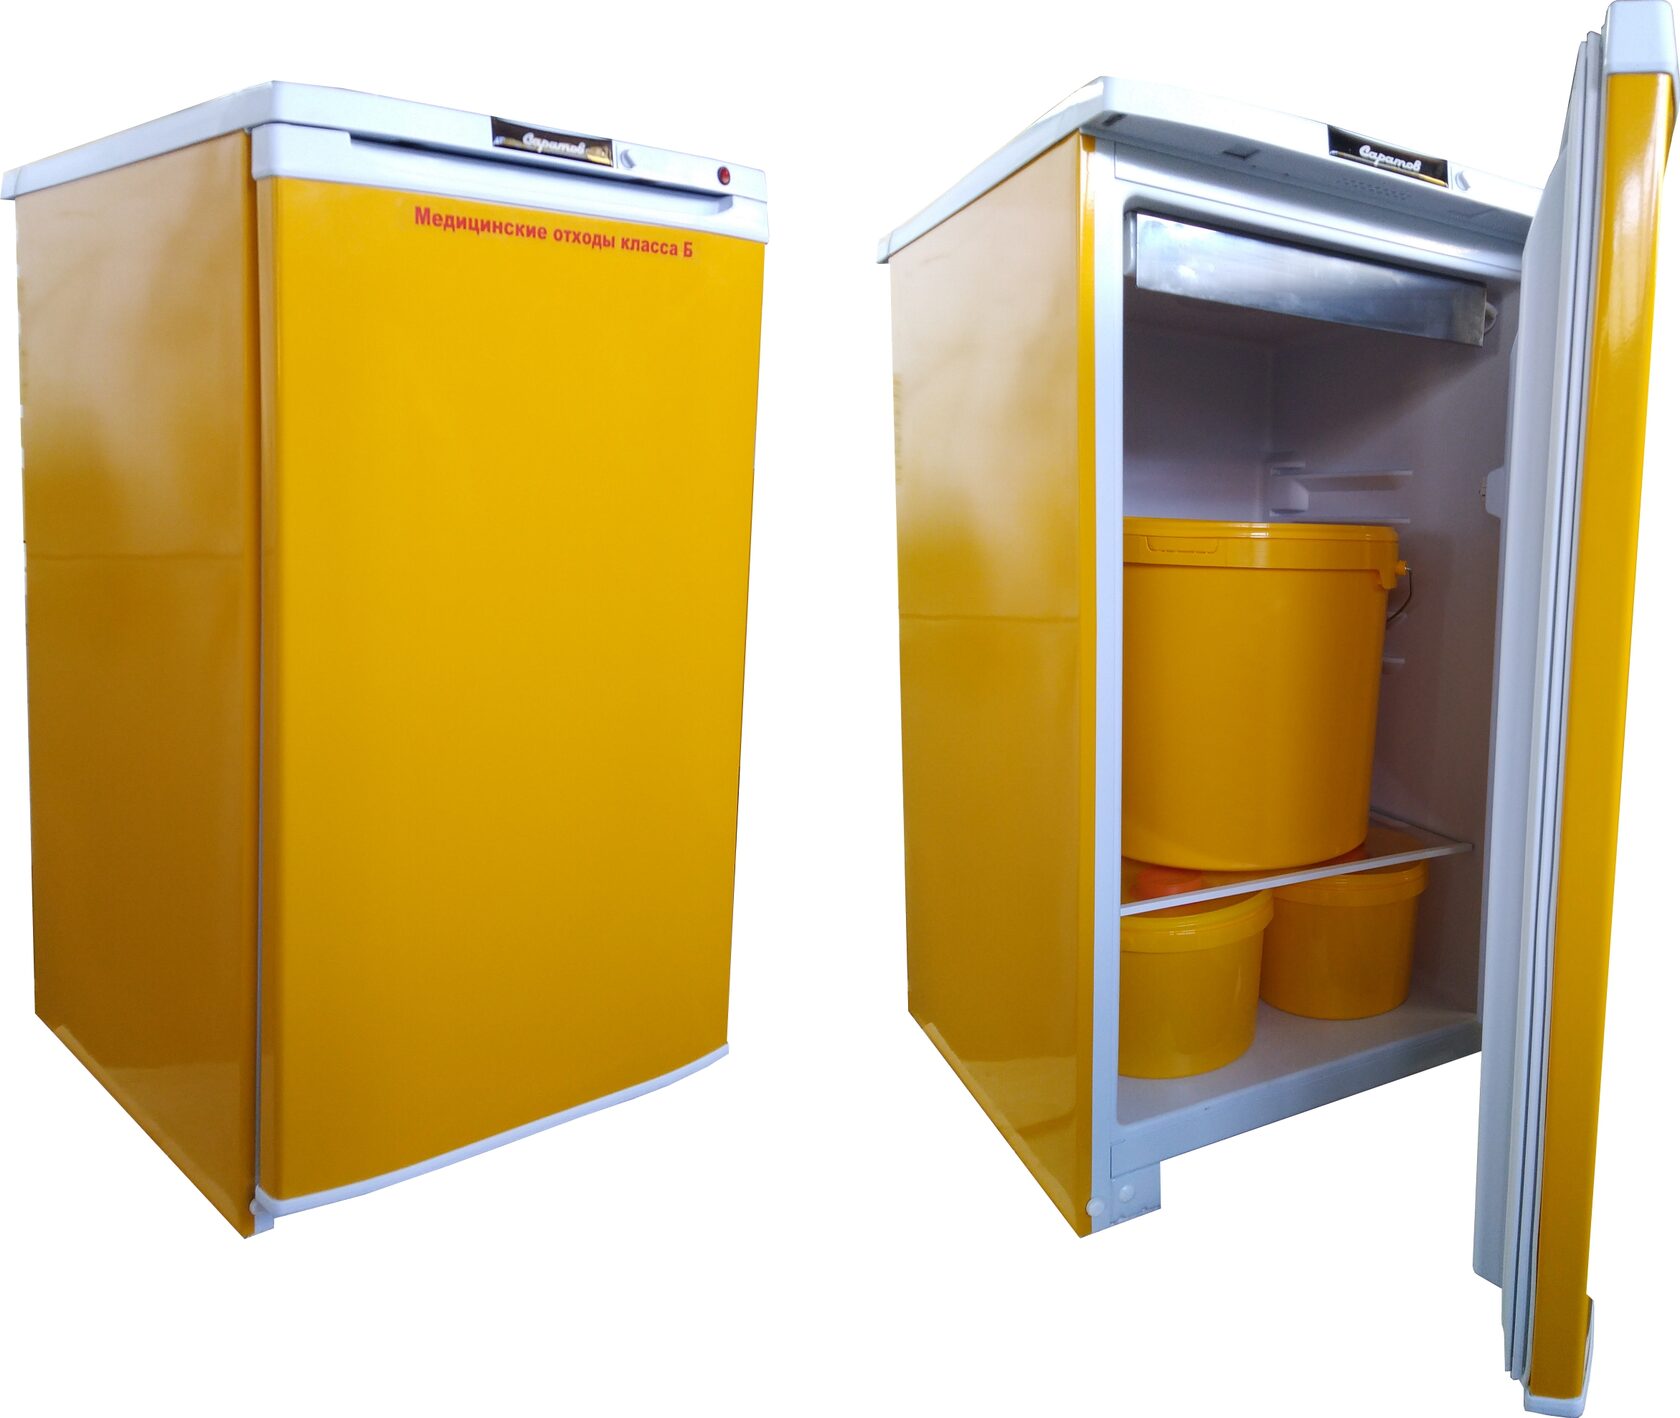 Кондор 10 холодильник для медицинских отходов